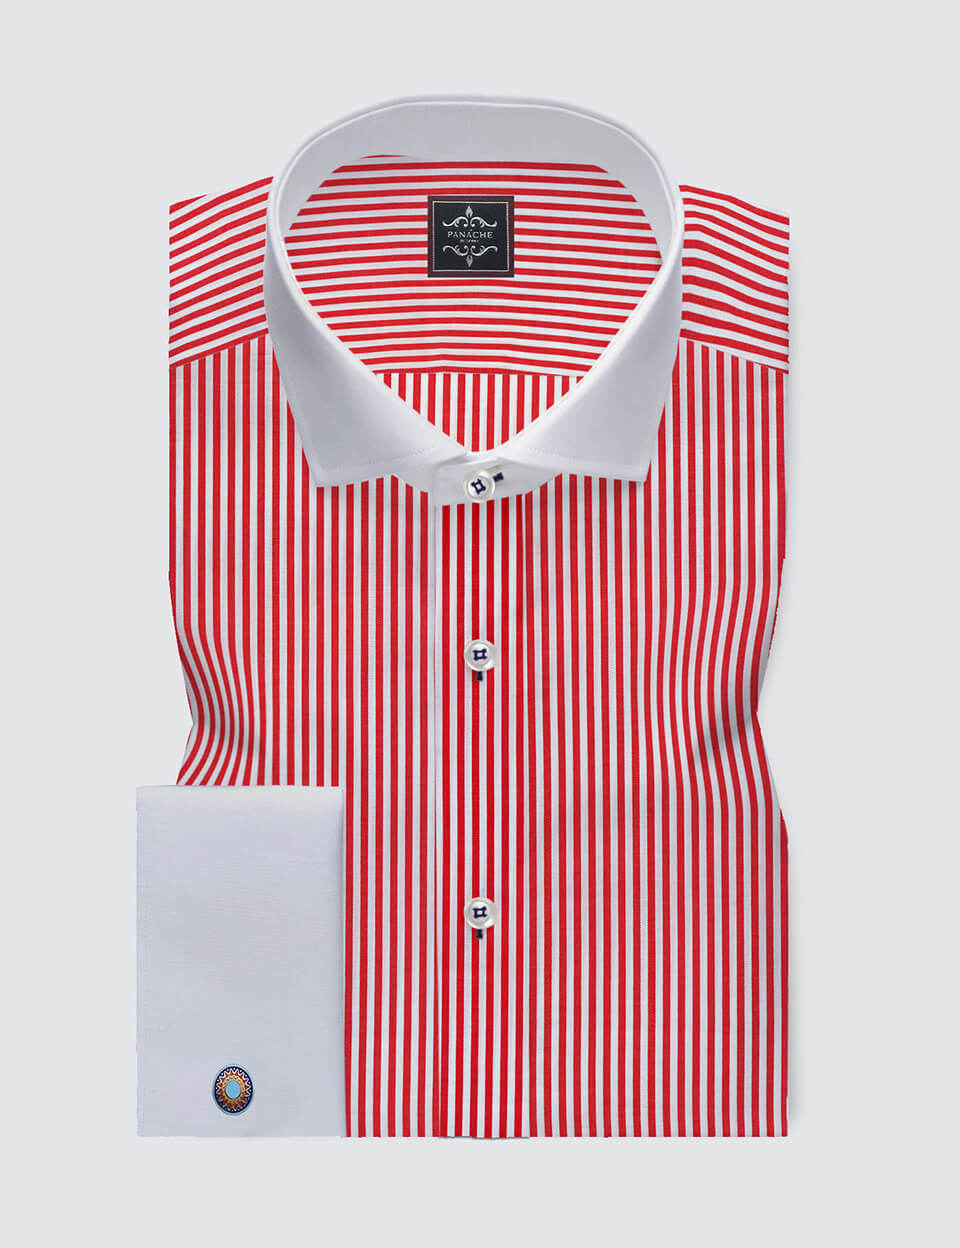 enhed Fordøjelsesorgan bevægelse White And Red Striped Shirt | Striped Shirts | Men's Dress Shirts Luxury 1